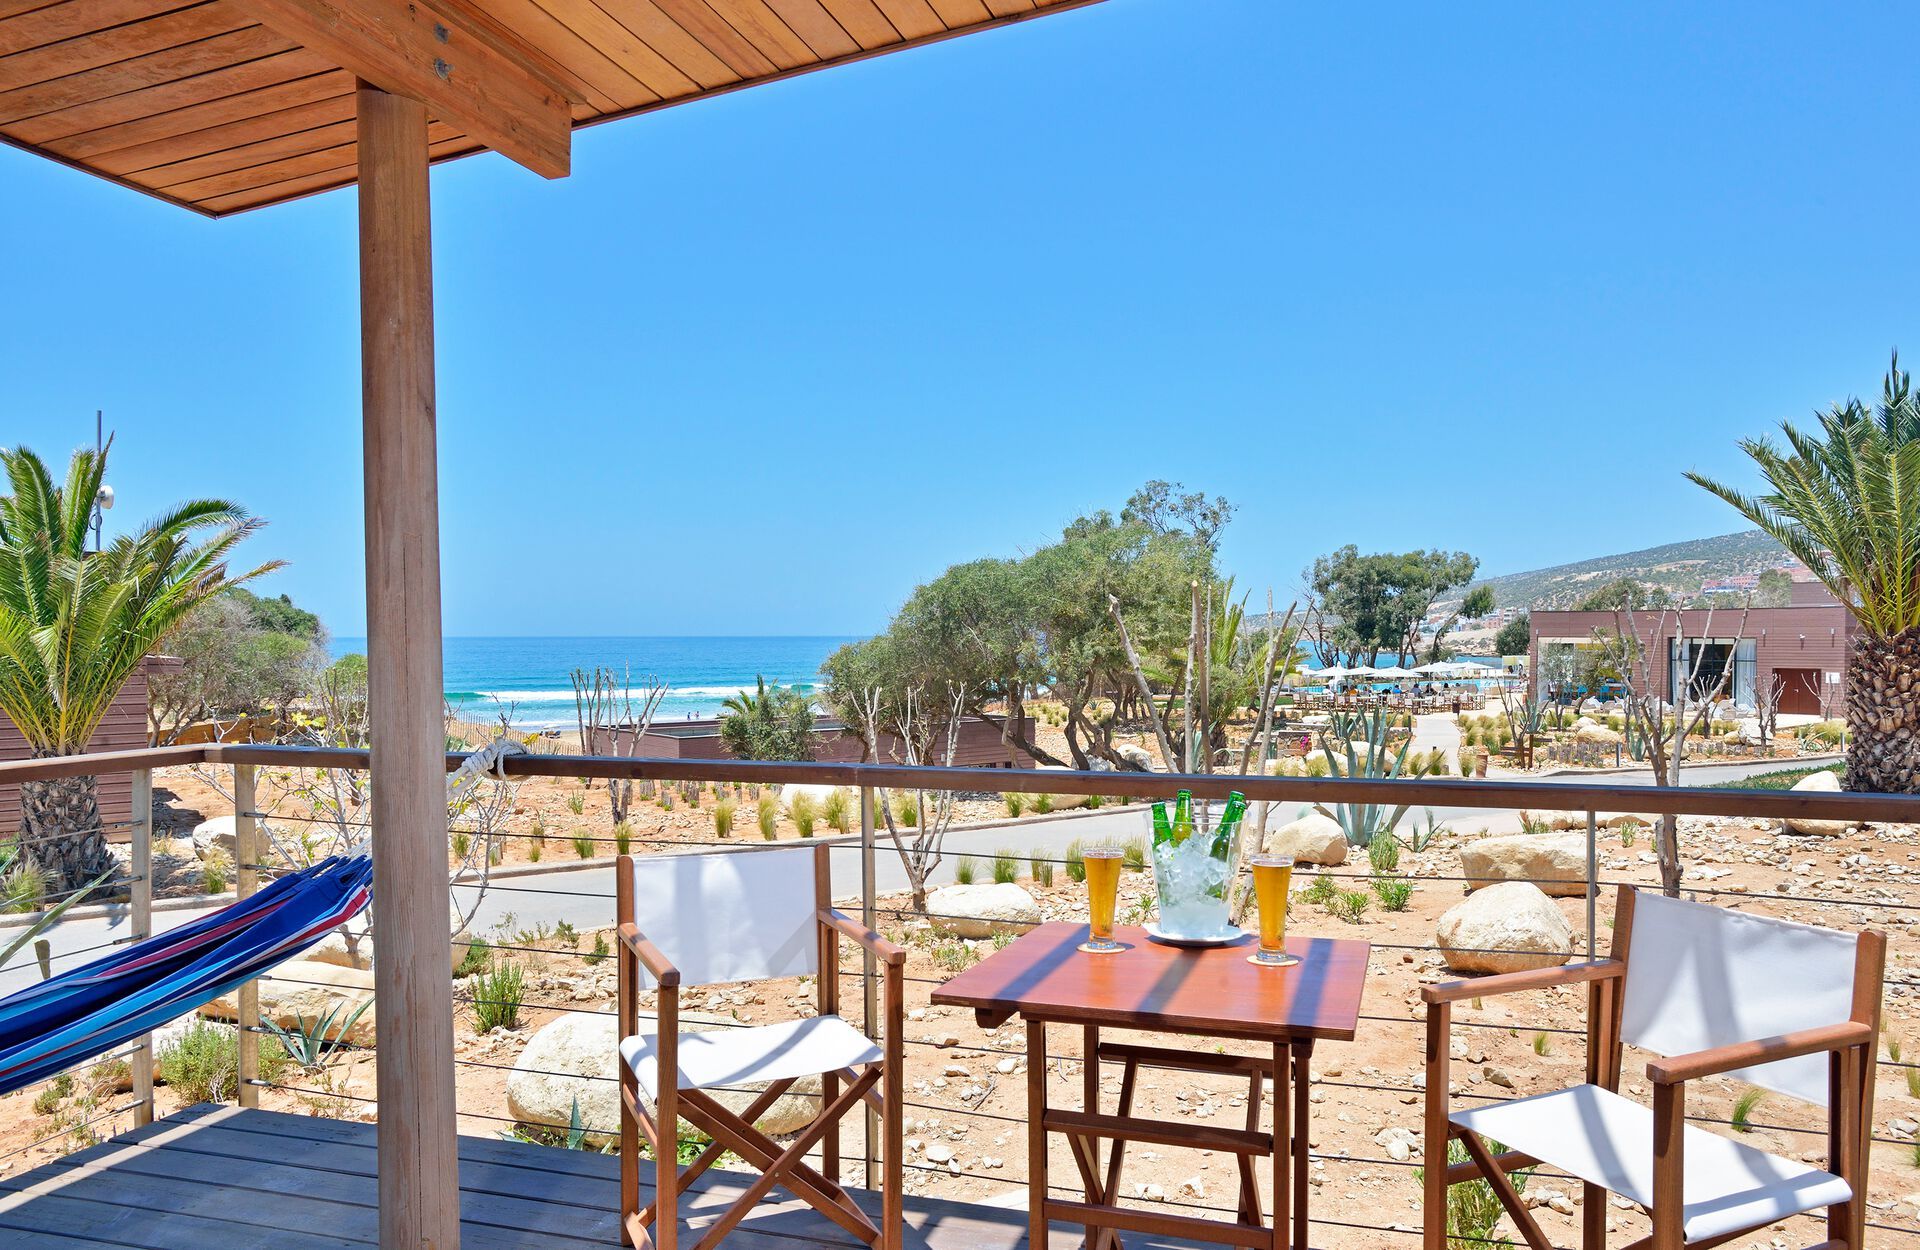 Maroc - Agadir - Hotel Radisson Blu Taghazout Bay Surf Village 5*